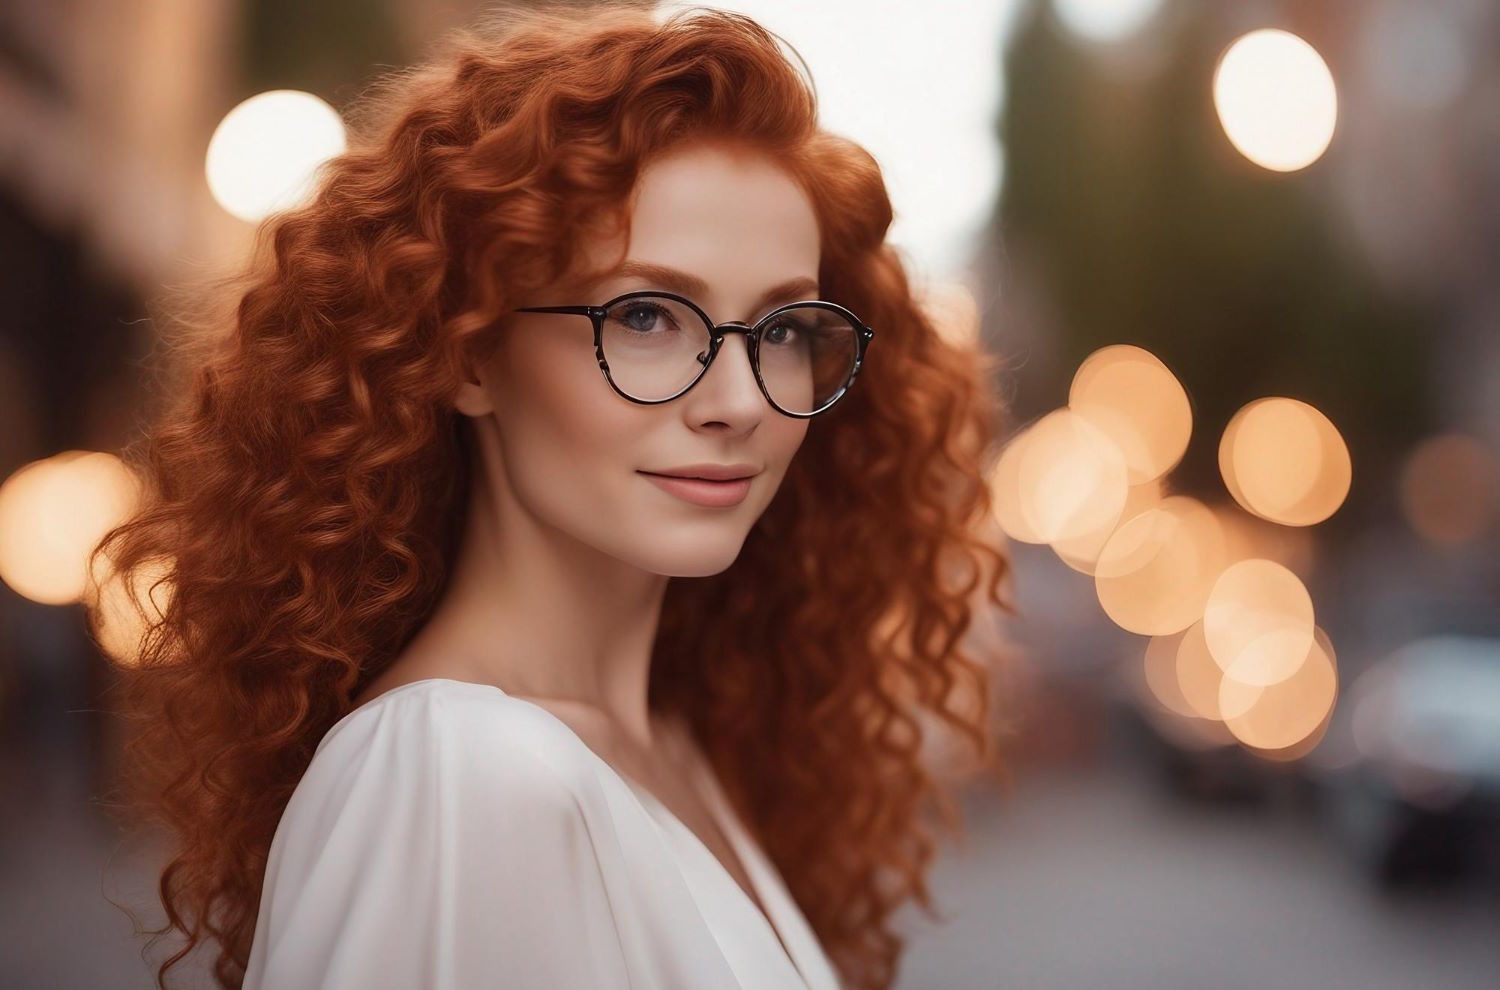 Markowe oprawki – jak wybrać idealne okulary korekcyjne?